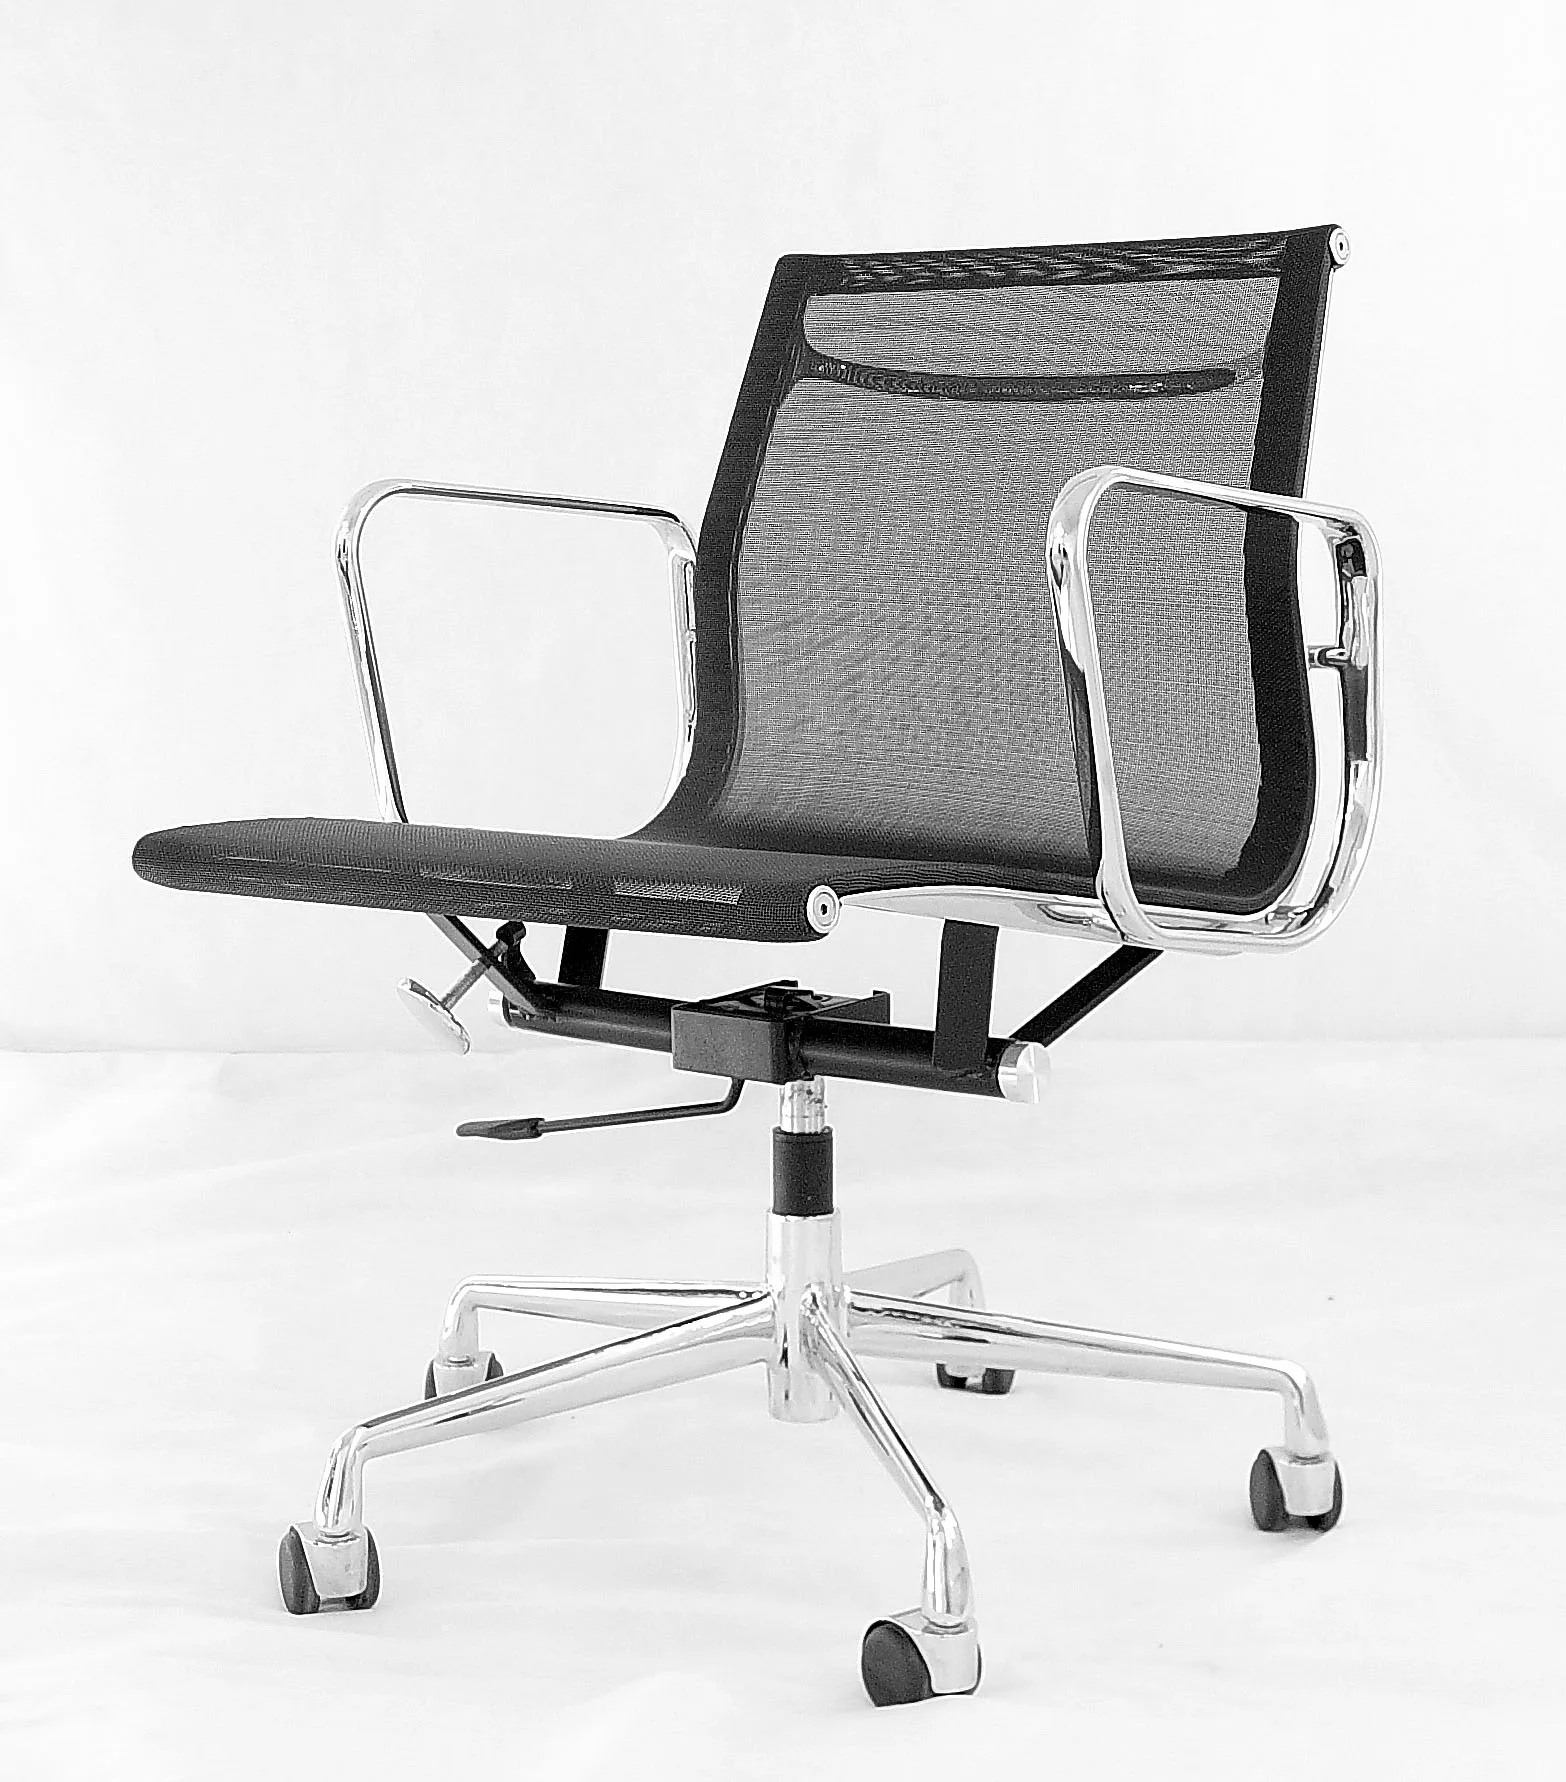 Офисное кресло сиденье сетка. Компьютерное кресло Katana сетчатое. Кресло компьютерное офисное сетка. Офисное кресло с сеткой на сиденье. Офисное кресло из сетки.